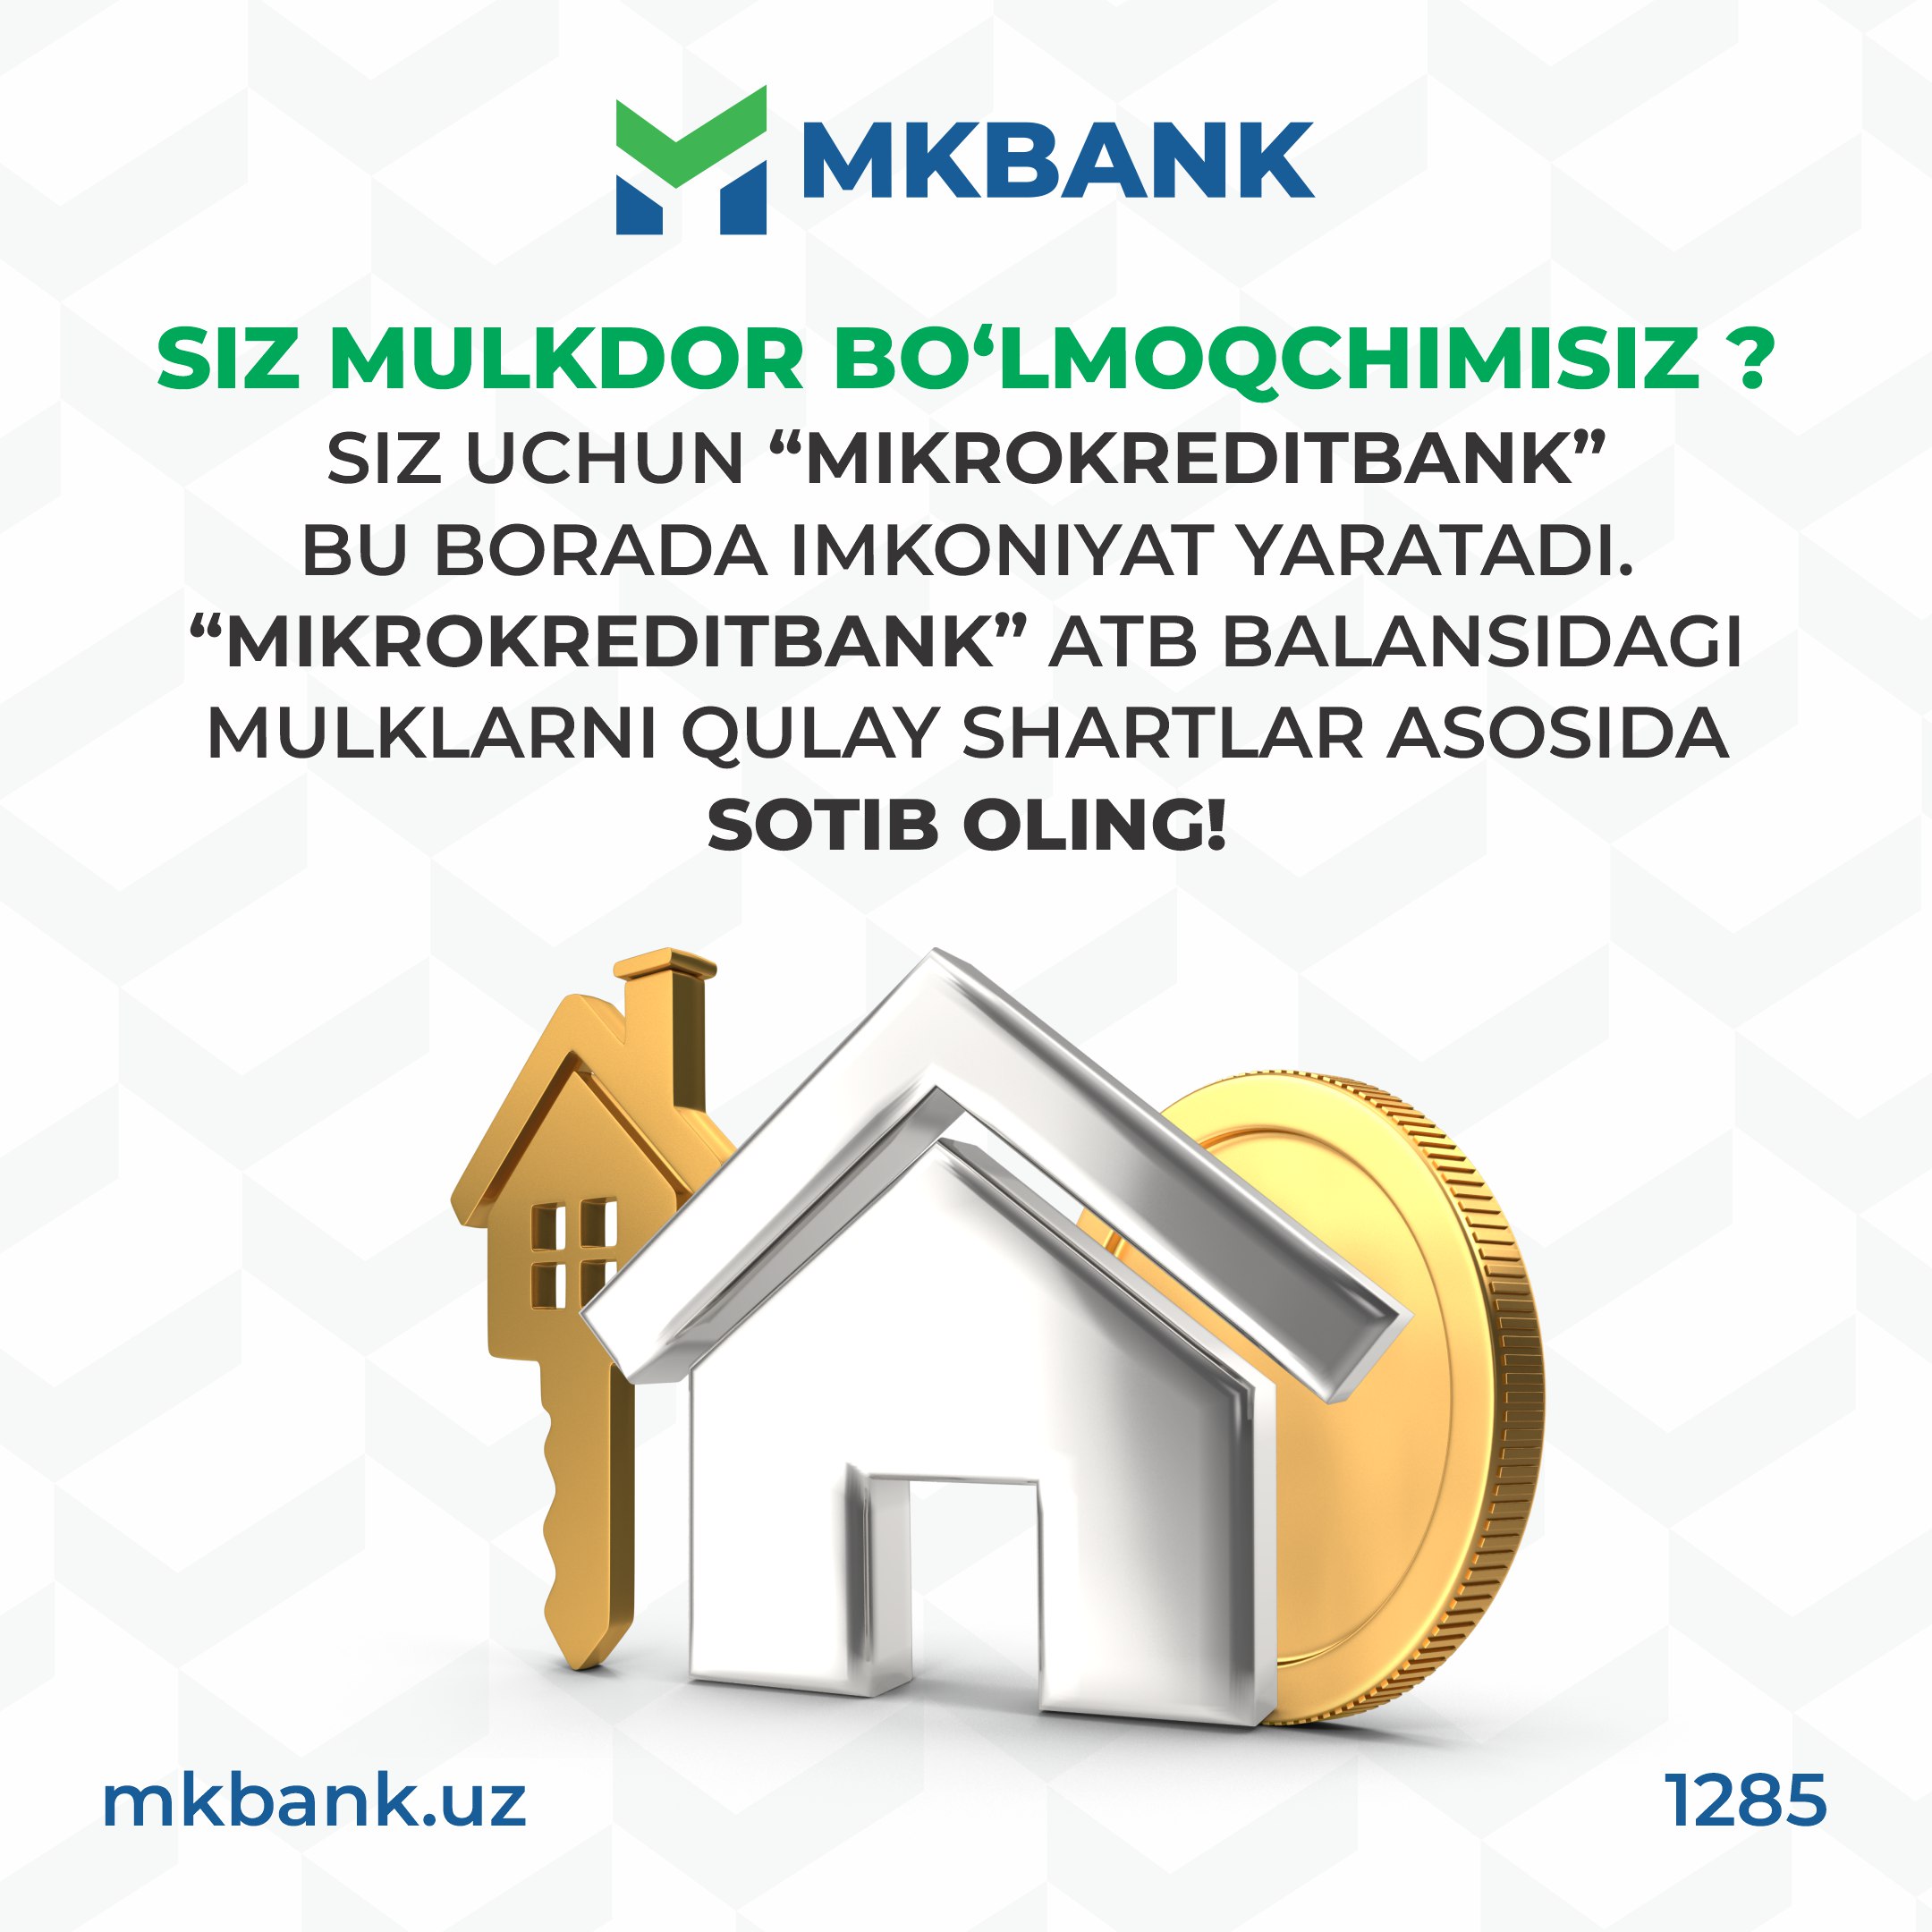 "Mikrokreditbank" ATB balansidagi mol-mulklarni "E-auksion" orqali bo'lib to'lash sharti bilan sotib oling